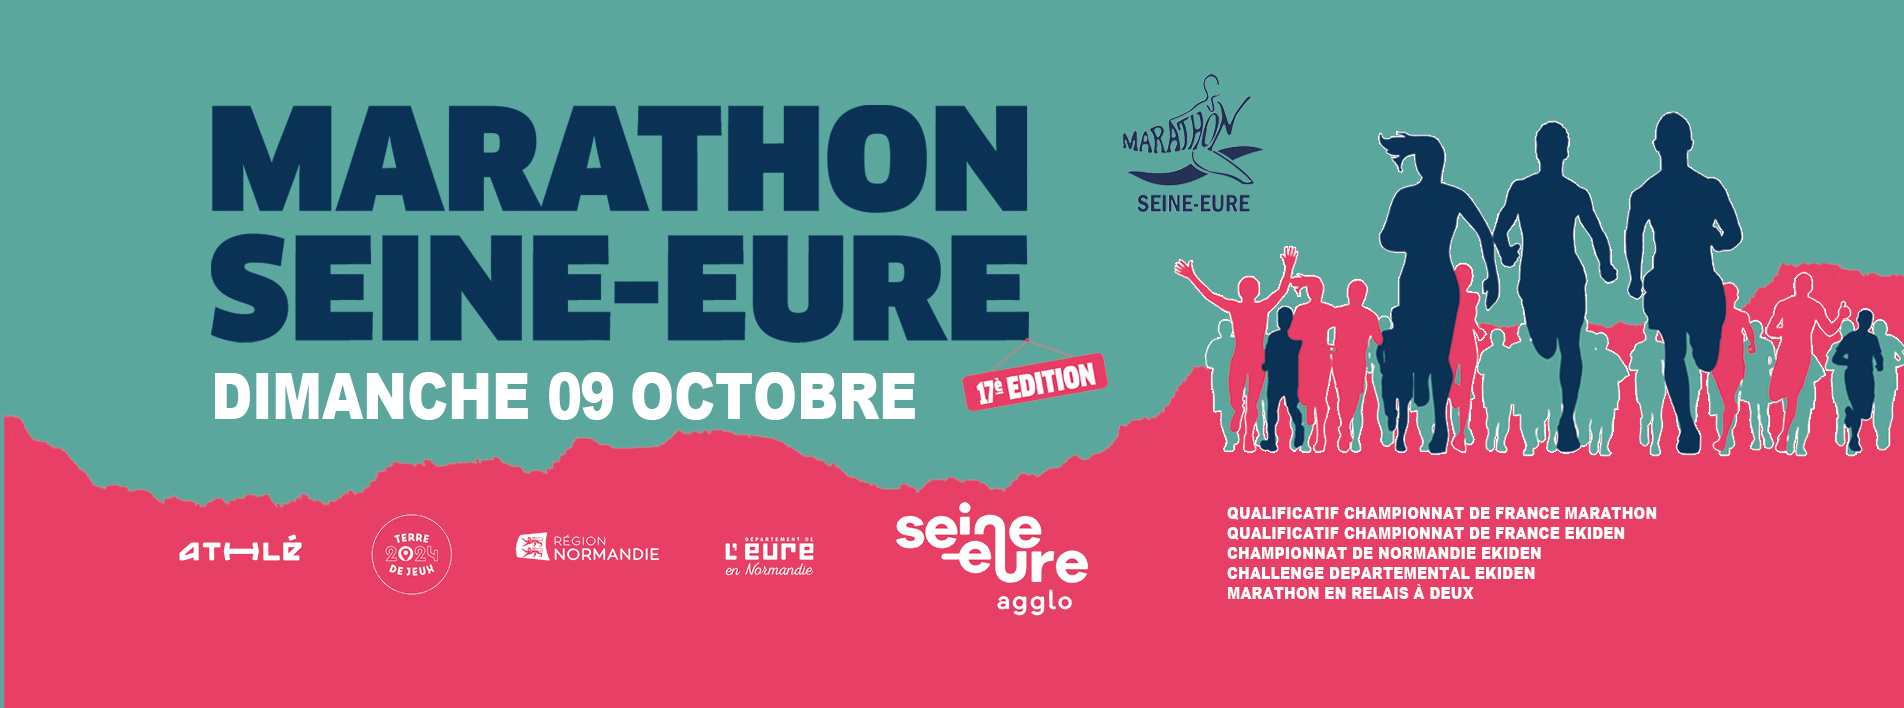 Le Marathon Seine-Eure